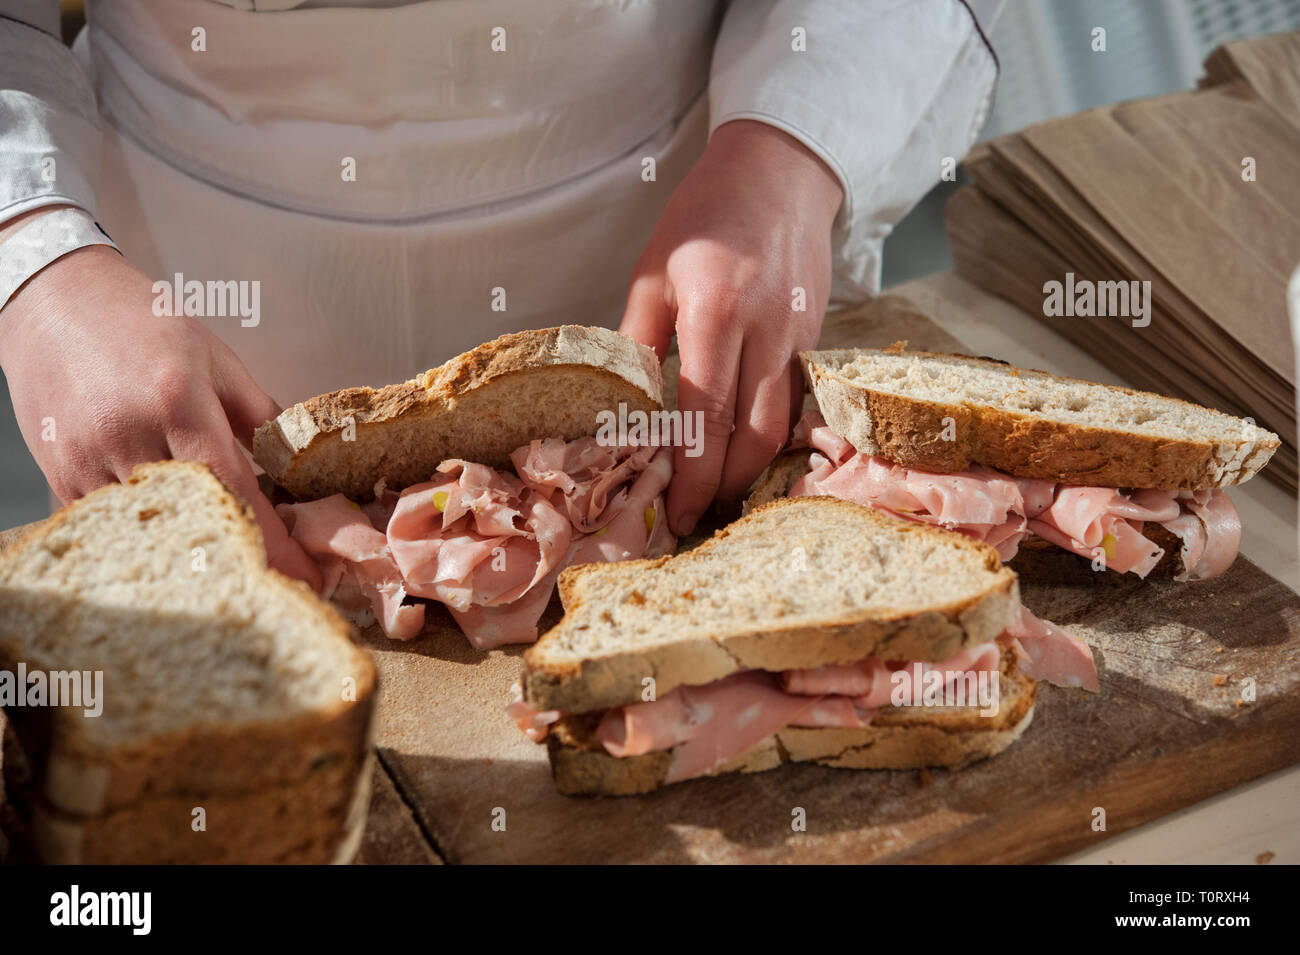 Preparing appetizing Mortadella Bologna sandwiches. Close up. Stock Photo